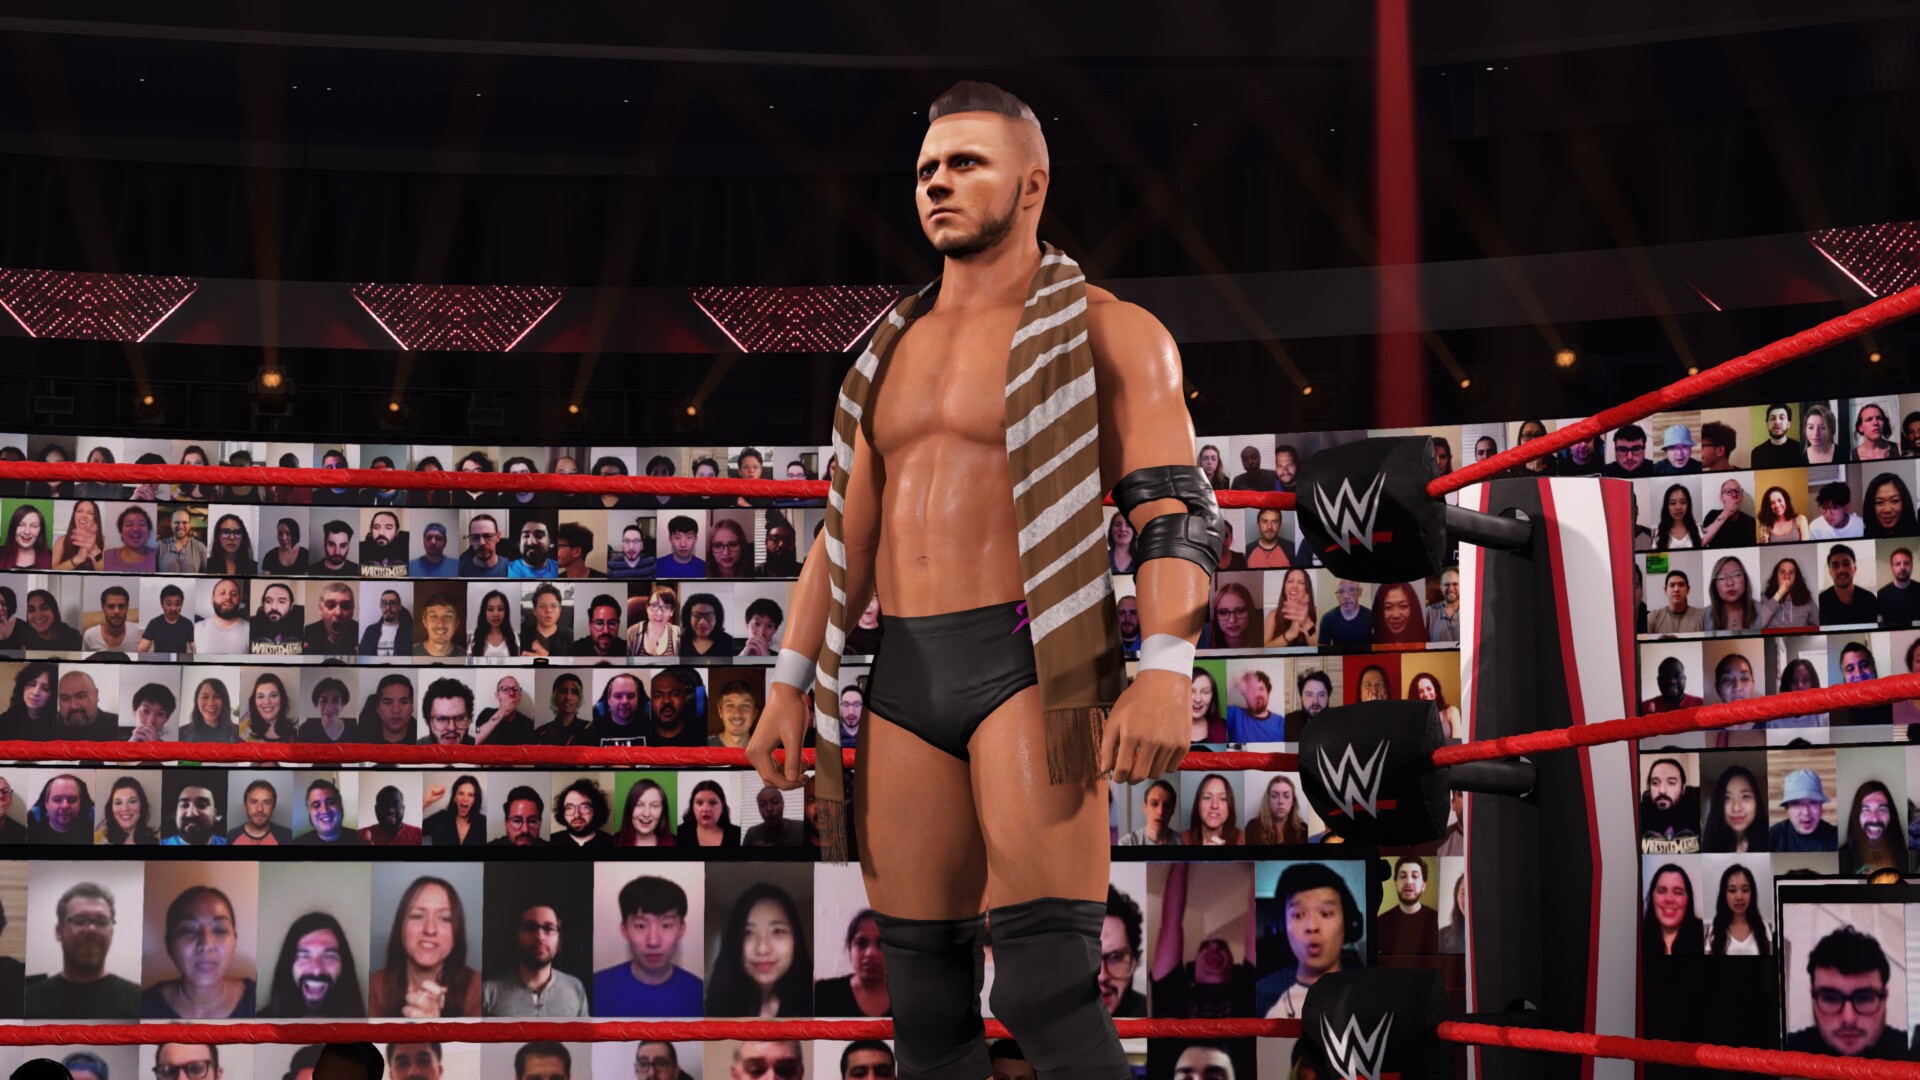 More Details On WWE 2K22 Creation Suite & Gameplay - WrestleTalk